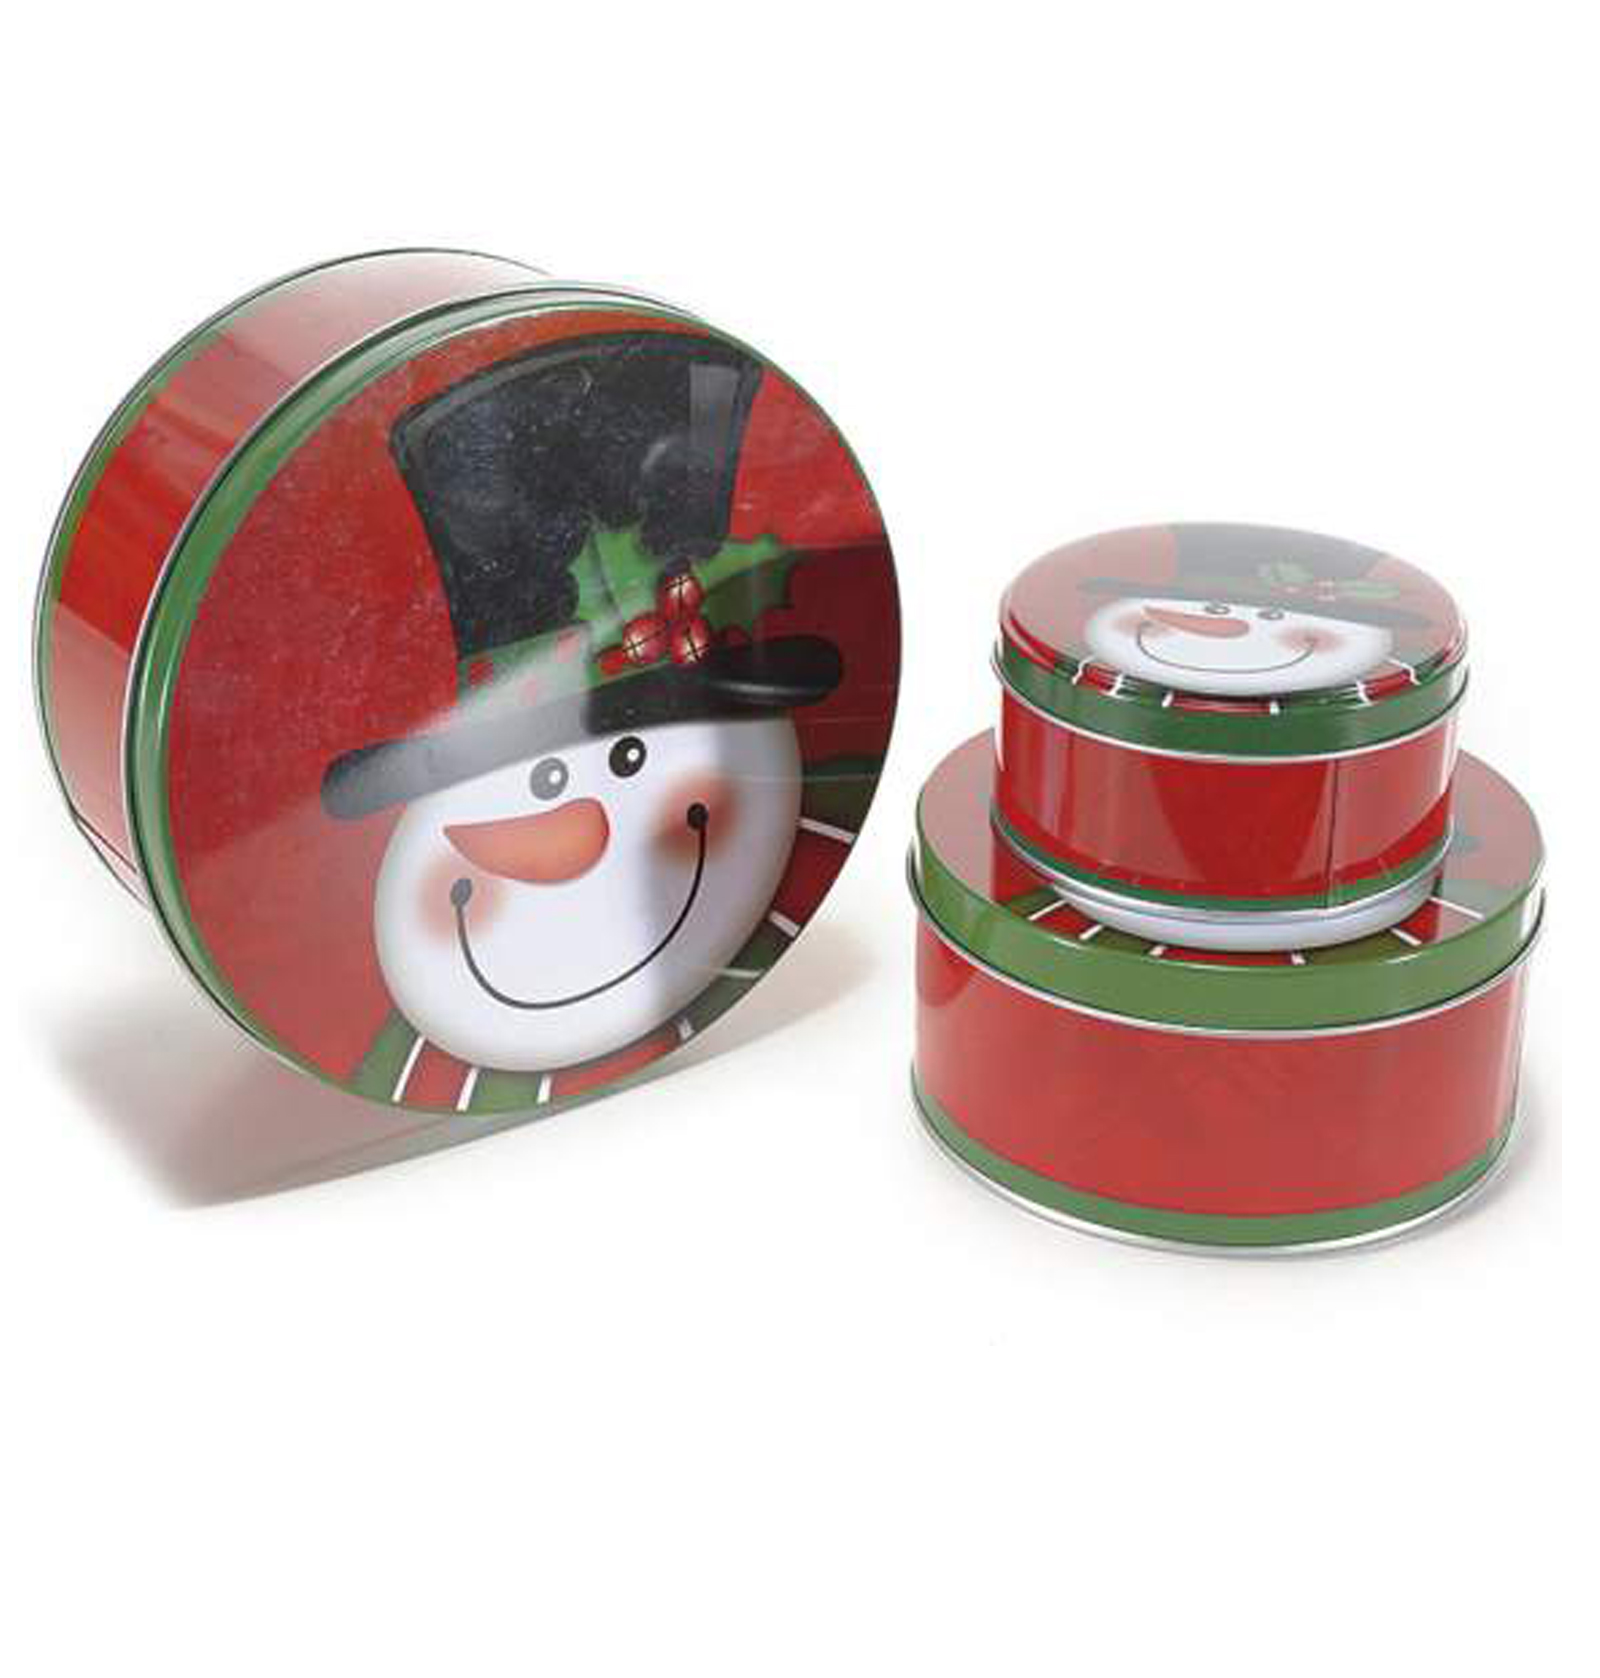 8Pz. Scatole natalizie in metallo decorato: cm 11 x 7,6 x 2,9 H, Scatole  Discount.it - Trasparenti, in cartone, portabottiglie, portaconfetti,  nastri, bomboniere e ragali